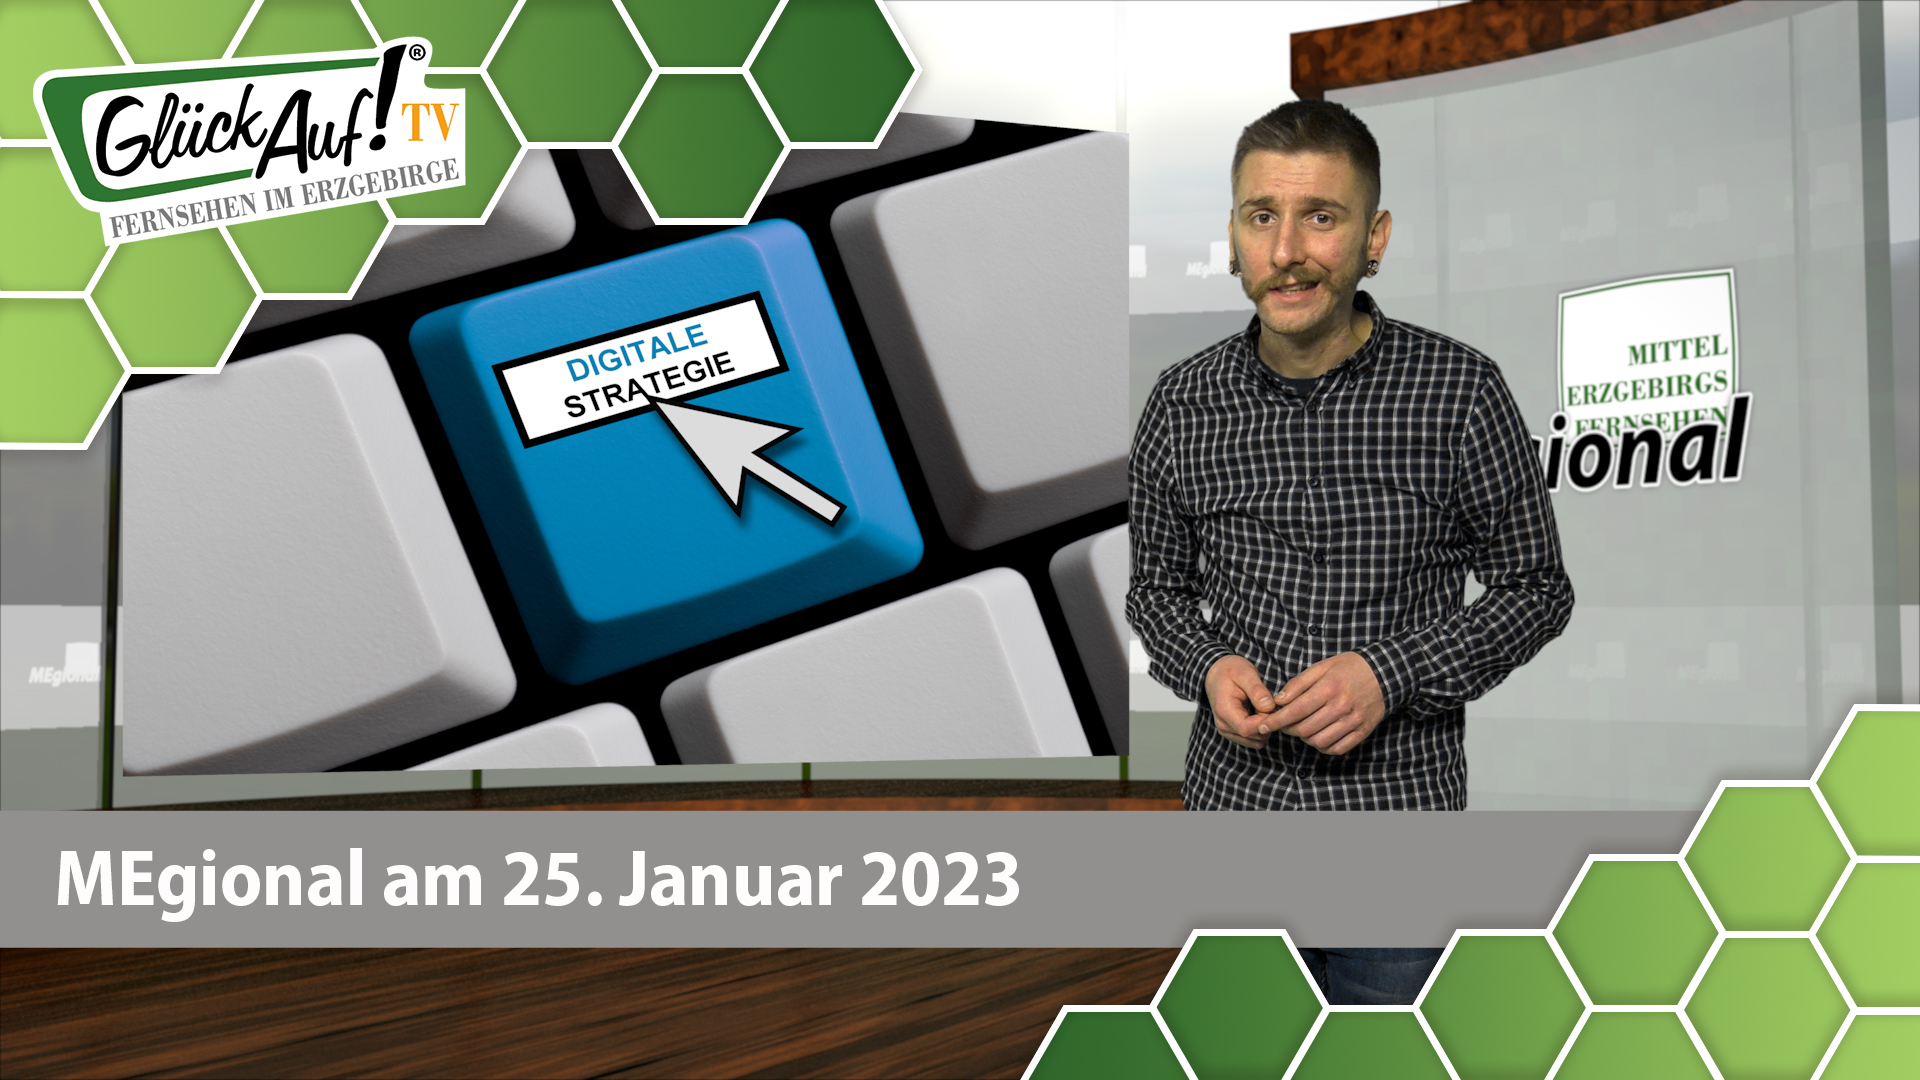 MEgional am 25. Januar 2023 - mit der Digitalstrategie in Sachsen